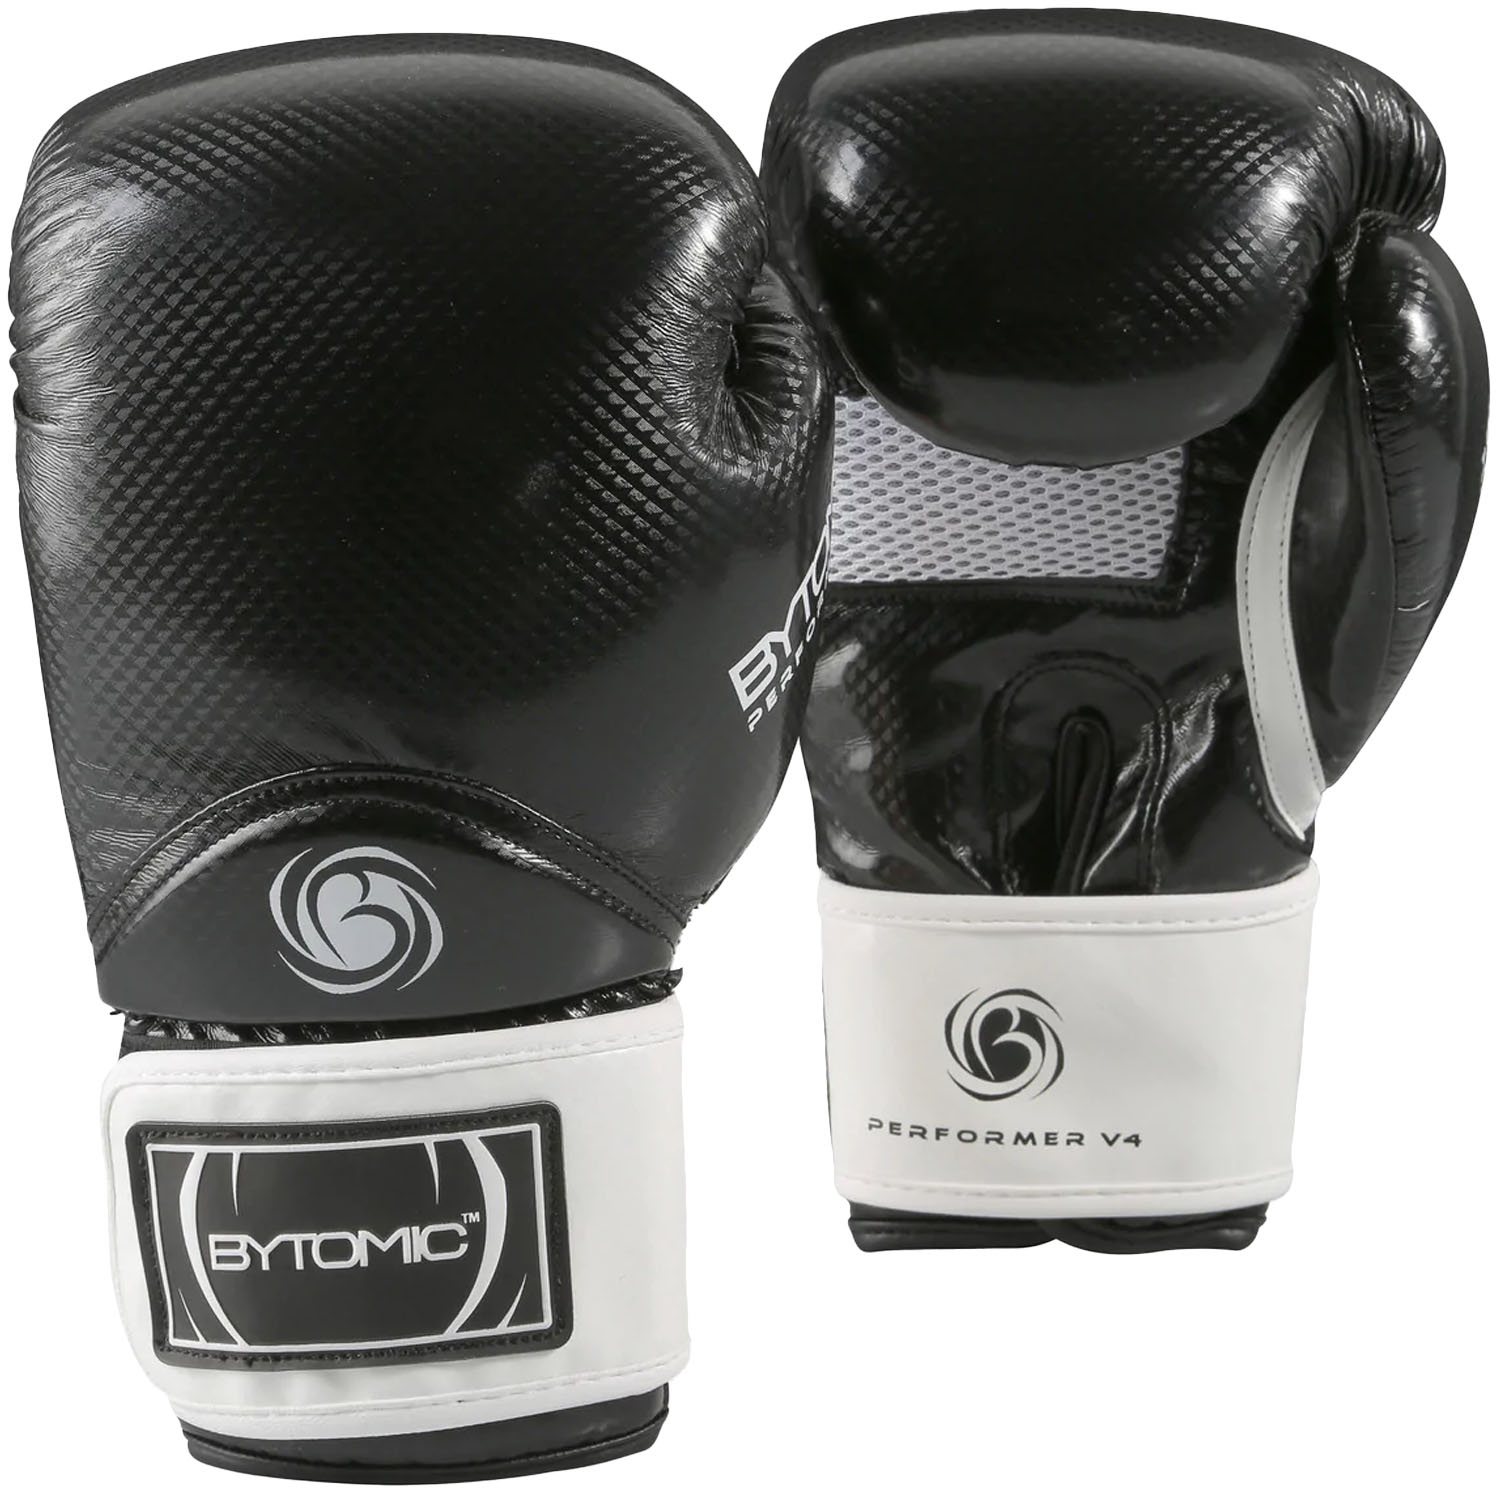 Bytomic Boxing Gloves, Performer, V4, black-white, 12 Oz